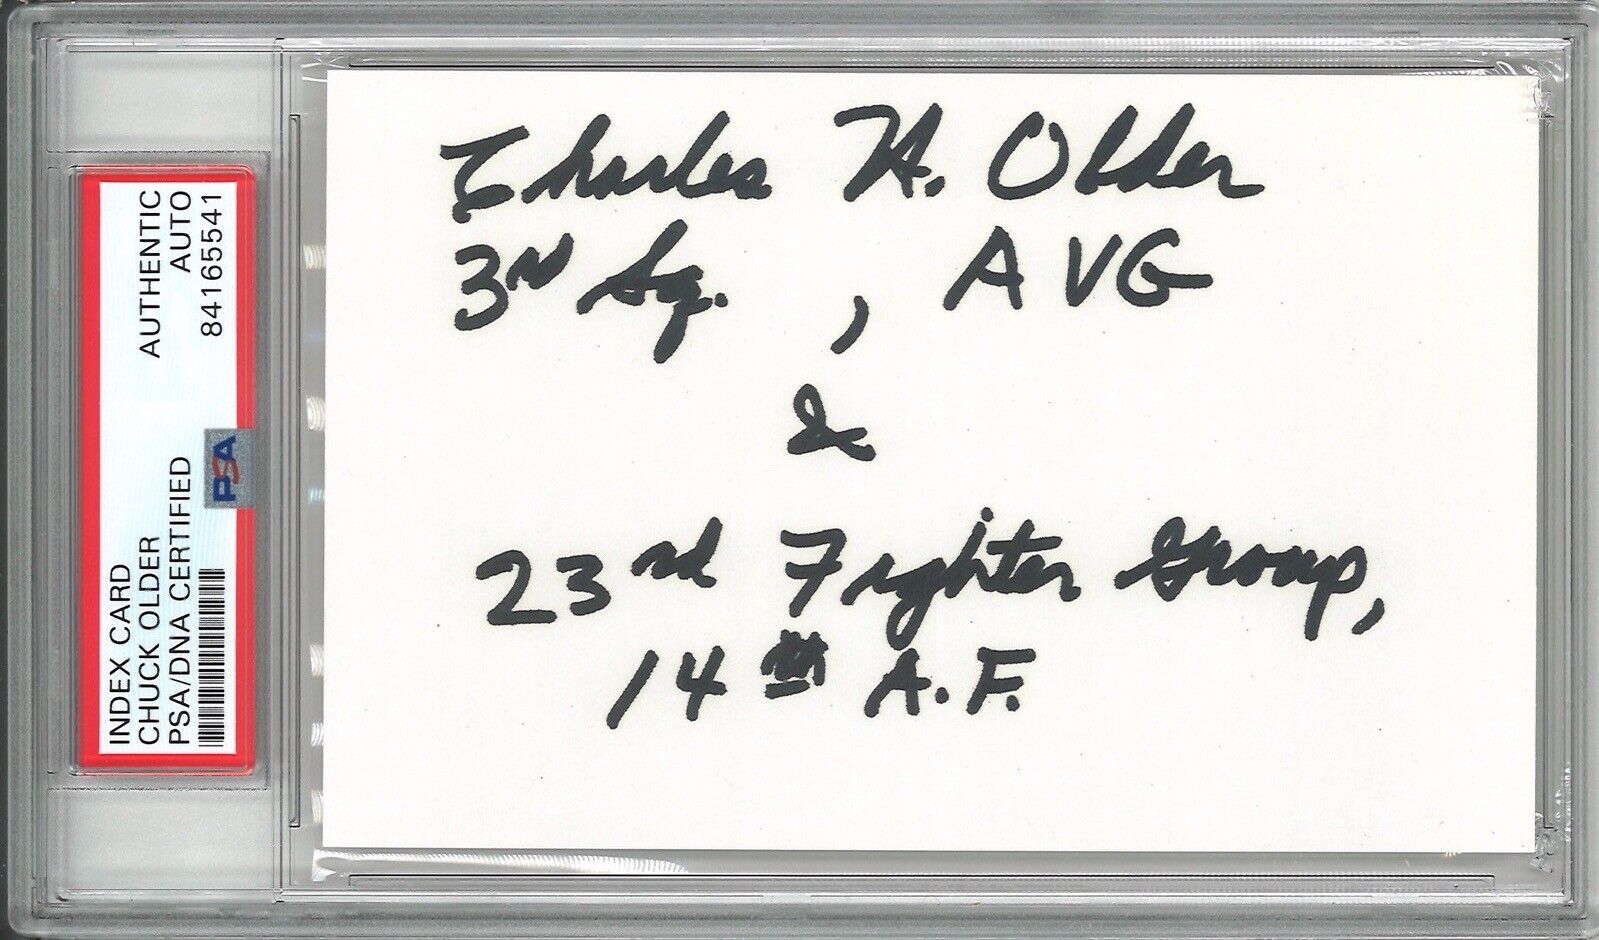 CHARLES OLDER SIGNED INDEX CARD PSA DNA 84165541 WWII ACE 18.25V AVG TIGER